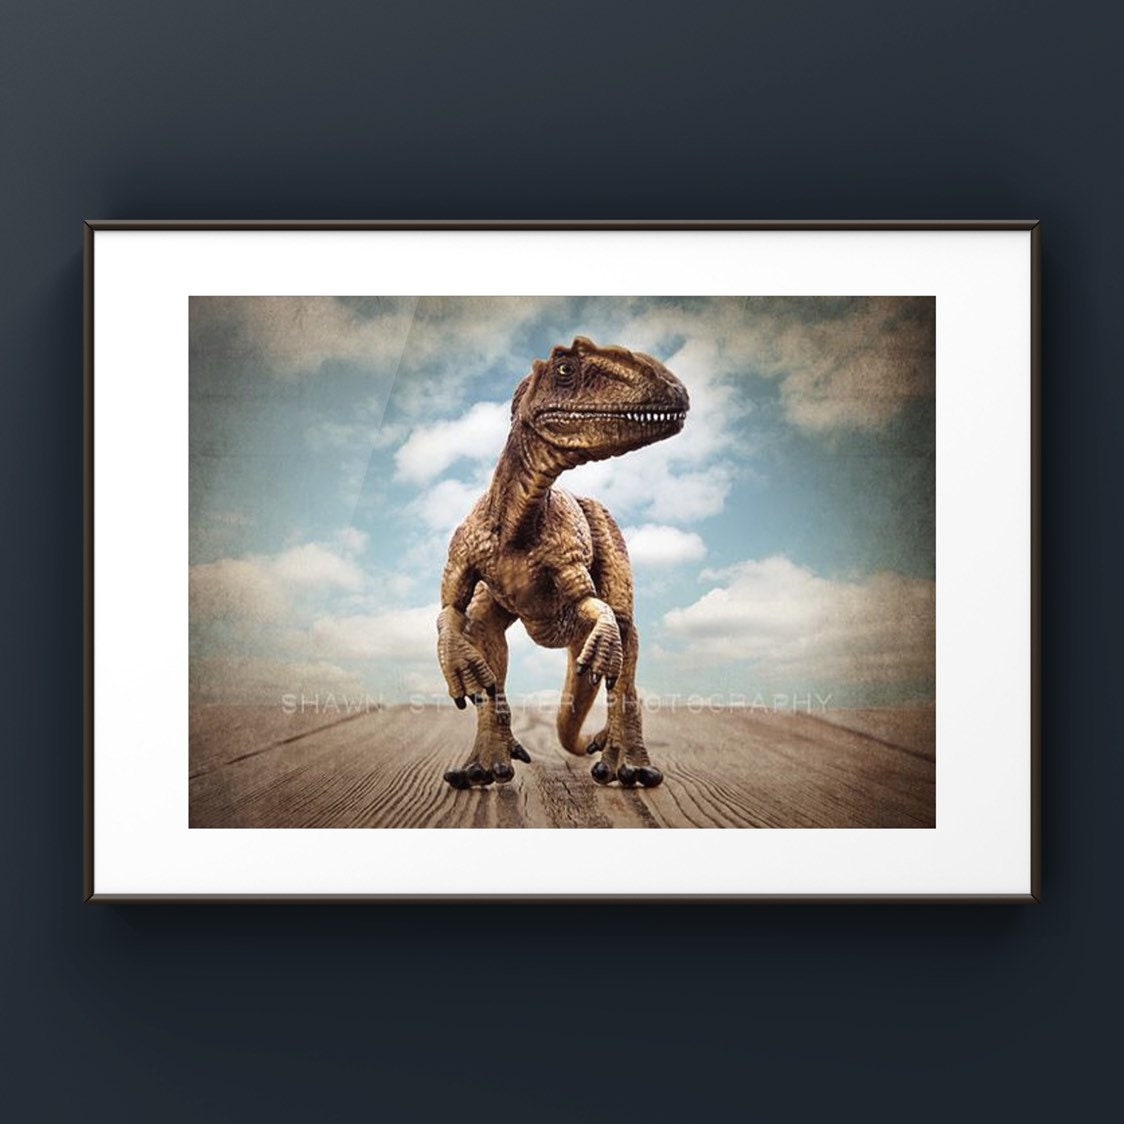 Dinosaur Jumping Stock Illustrations – 175 Dinosaur Jumping Stock